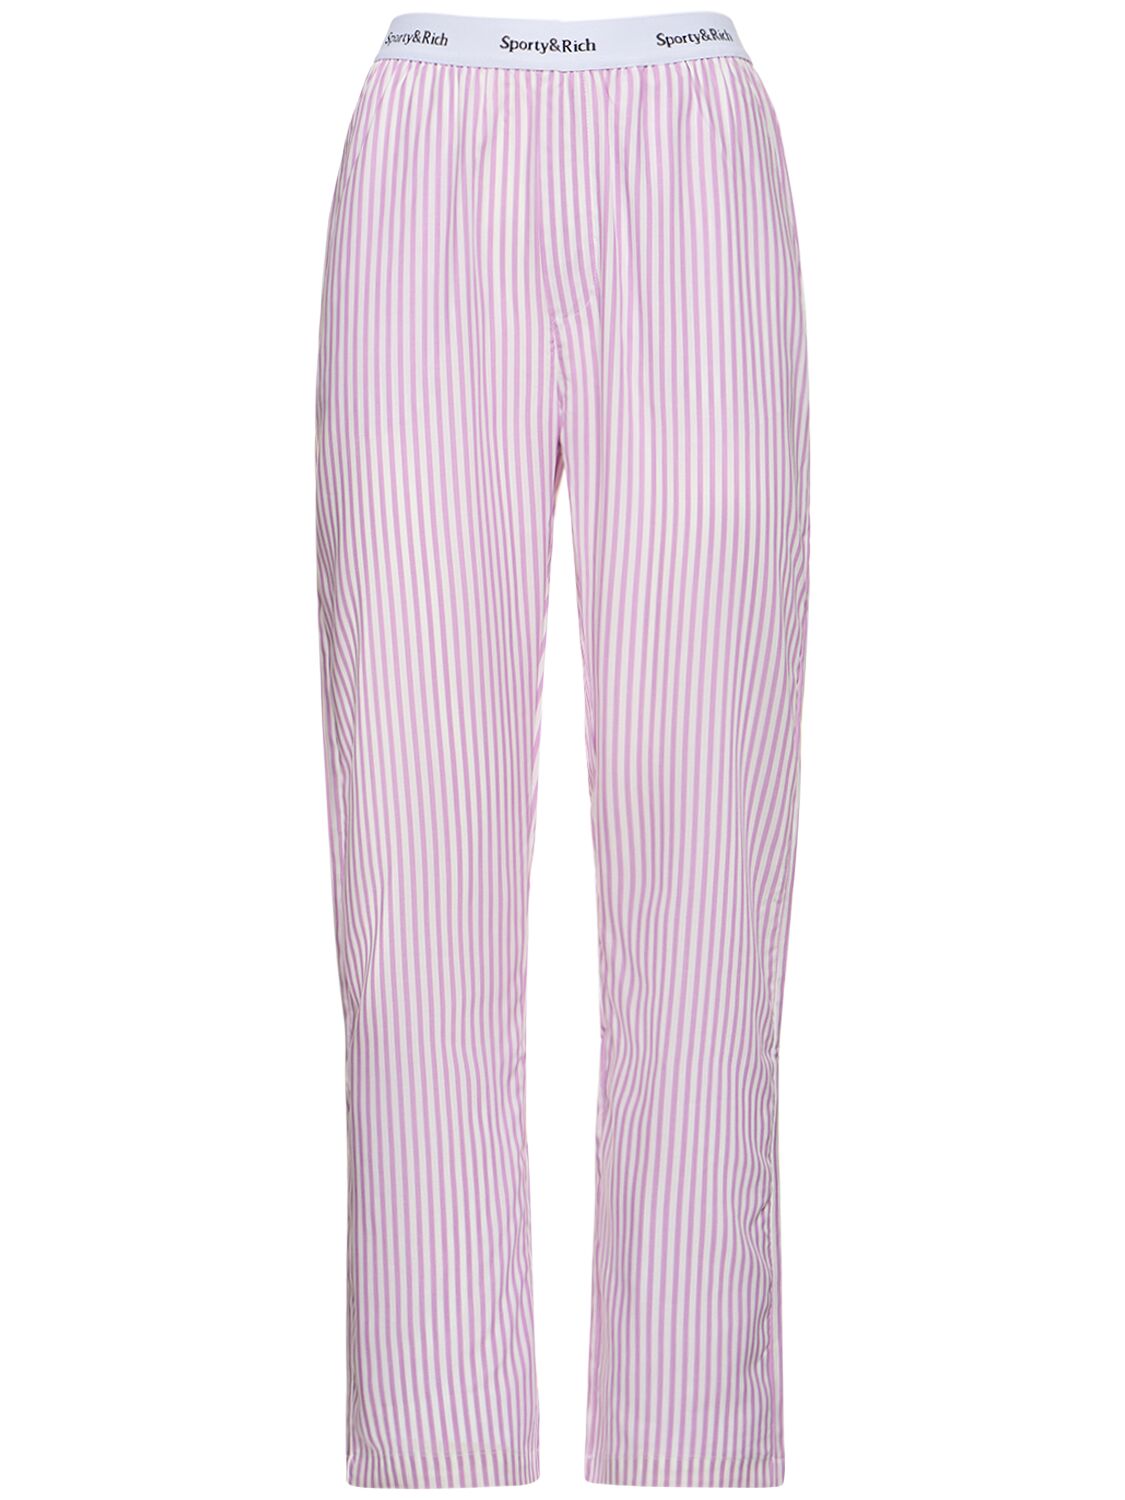 Serif Logo Pajama Pants – WOMEN > CLOTHING > PANTS